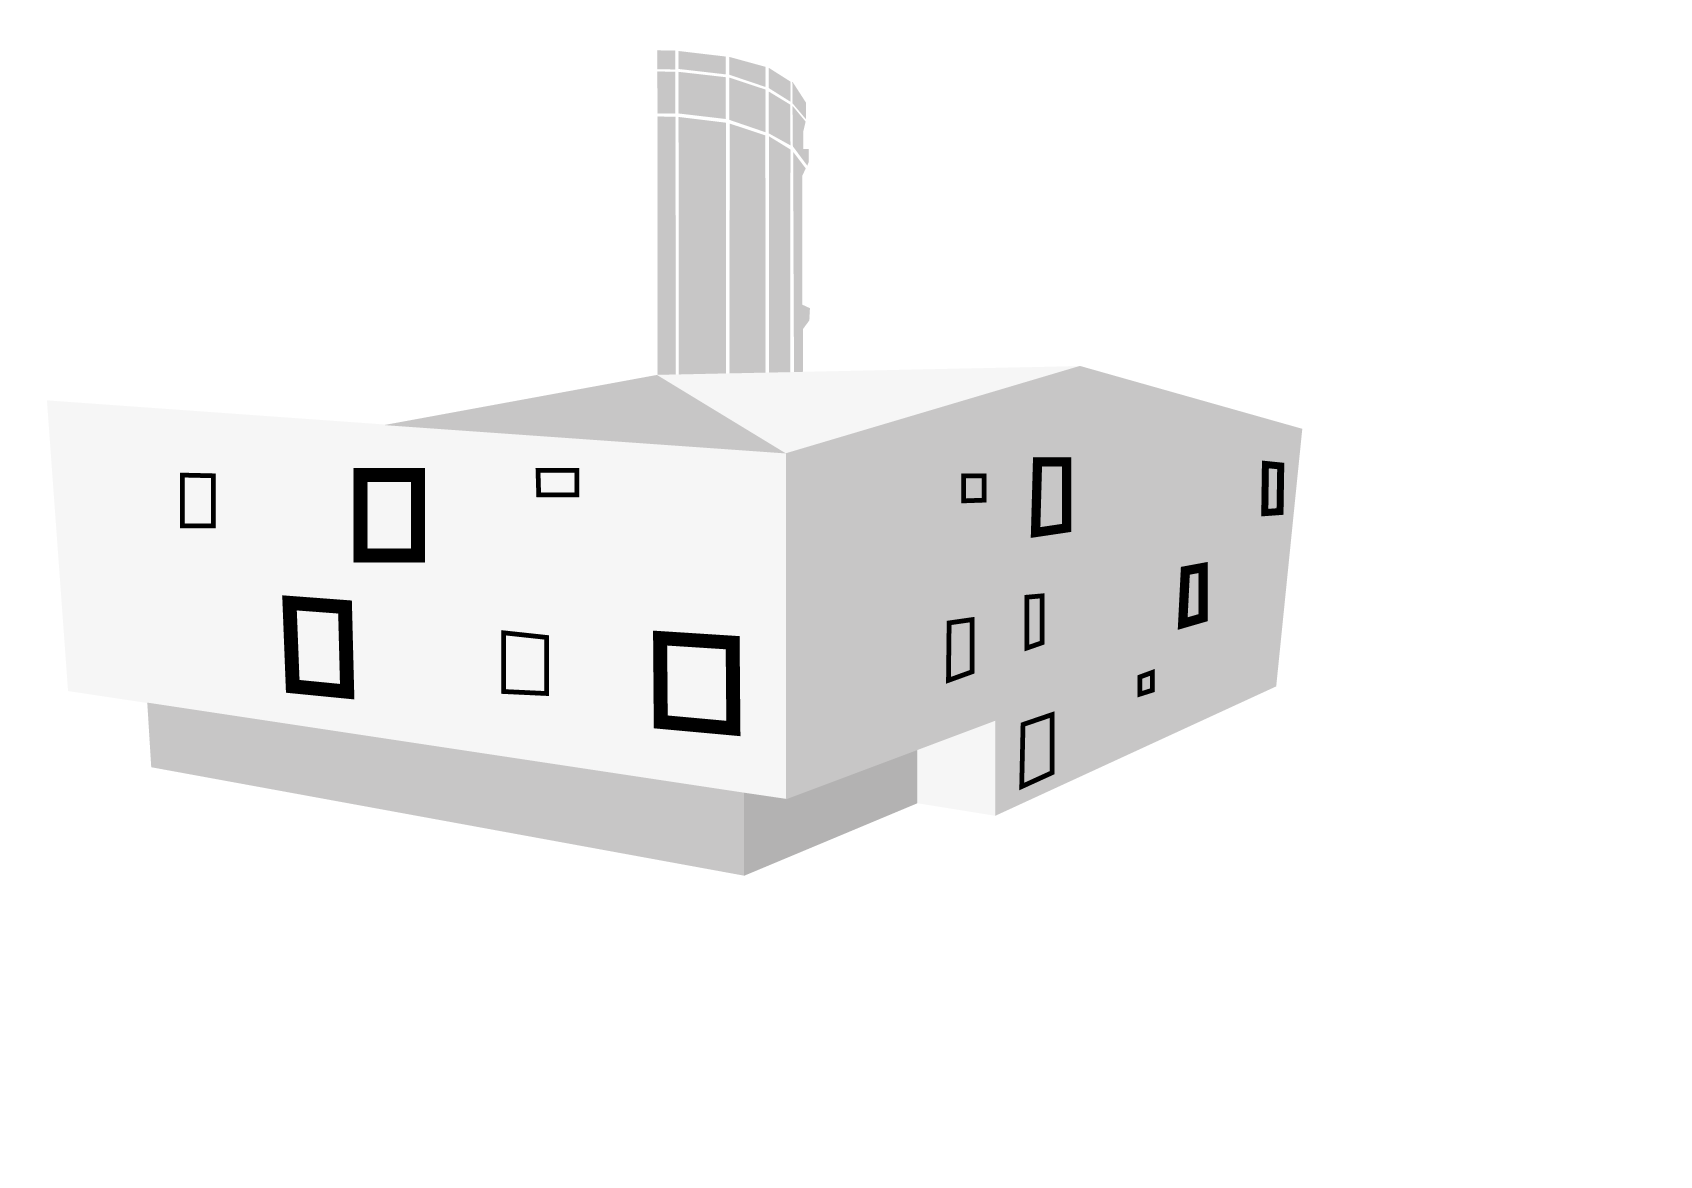 Stadtteilzentrum Heckinghausen